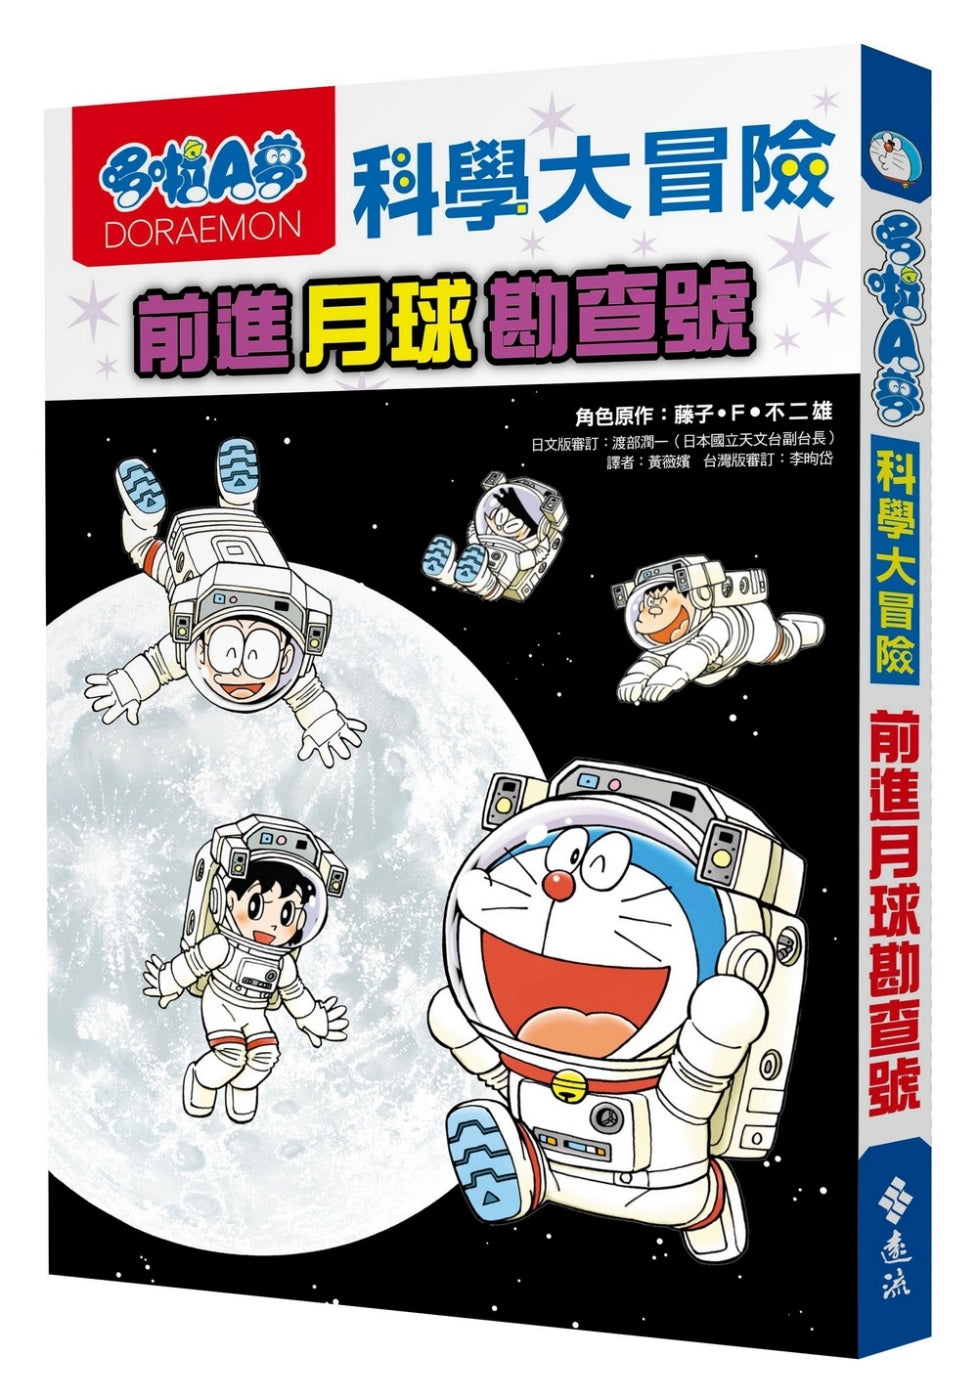 Doraemon Science Adventure #1: To the Moon! • 哆啦A夢科學大冒險1：前進月球勘查號